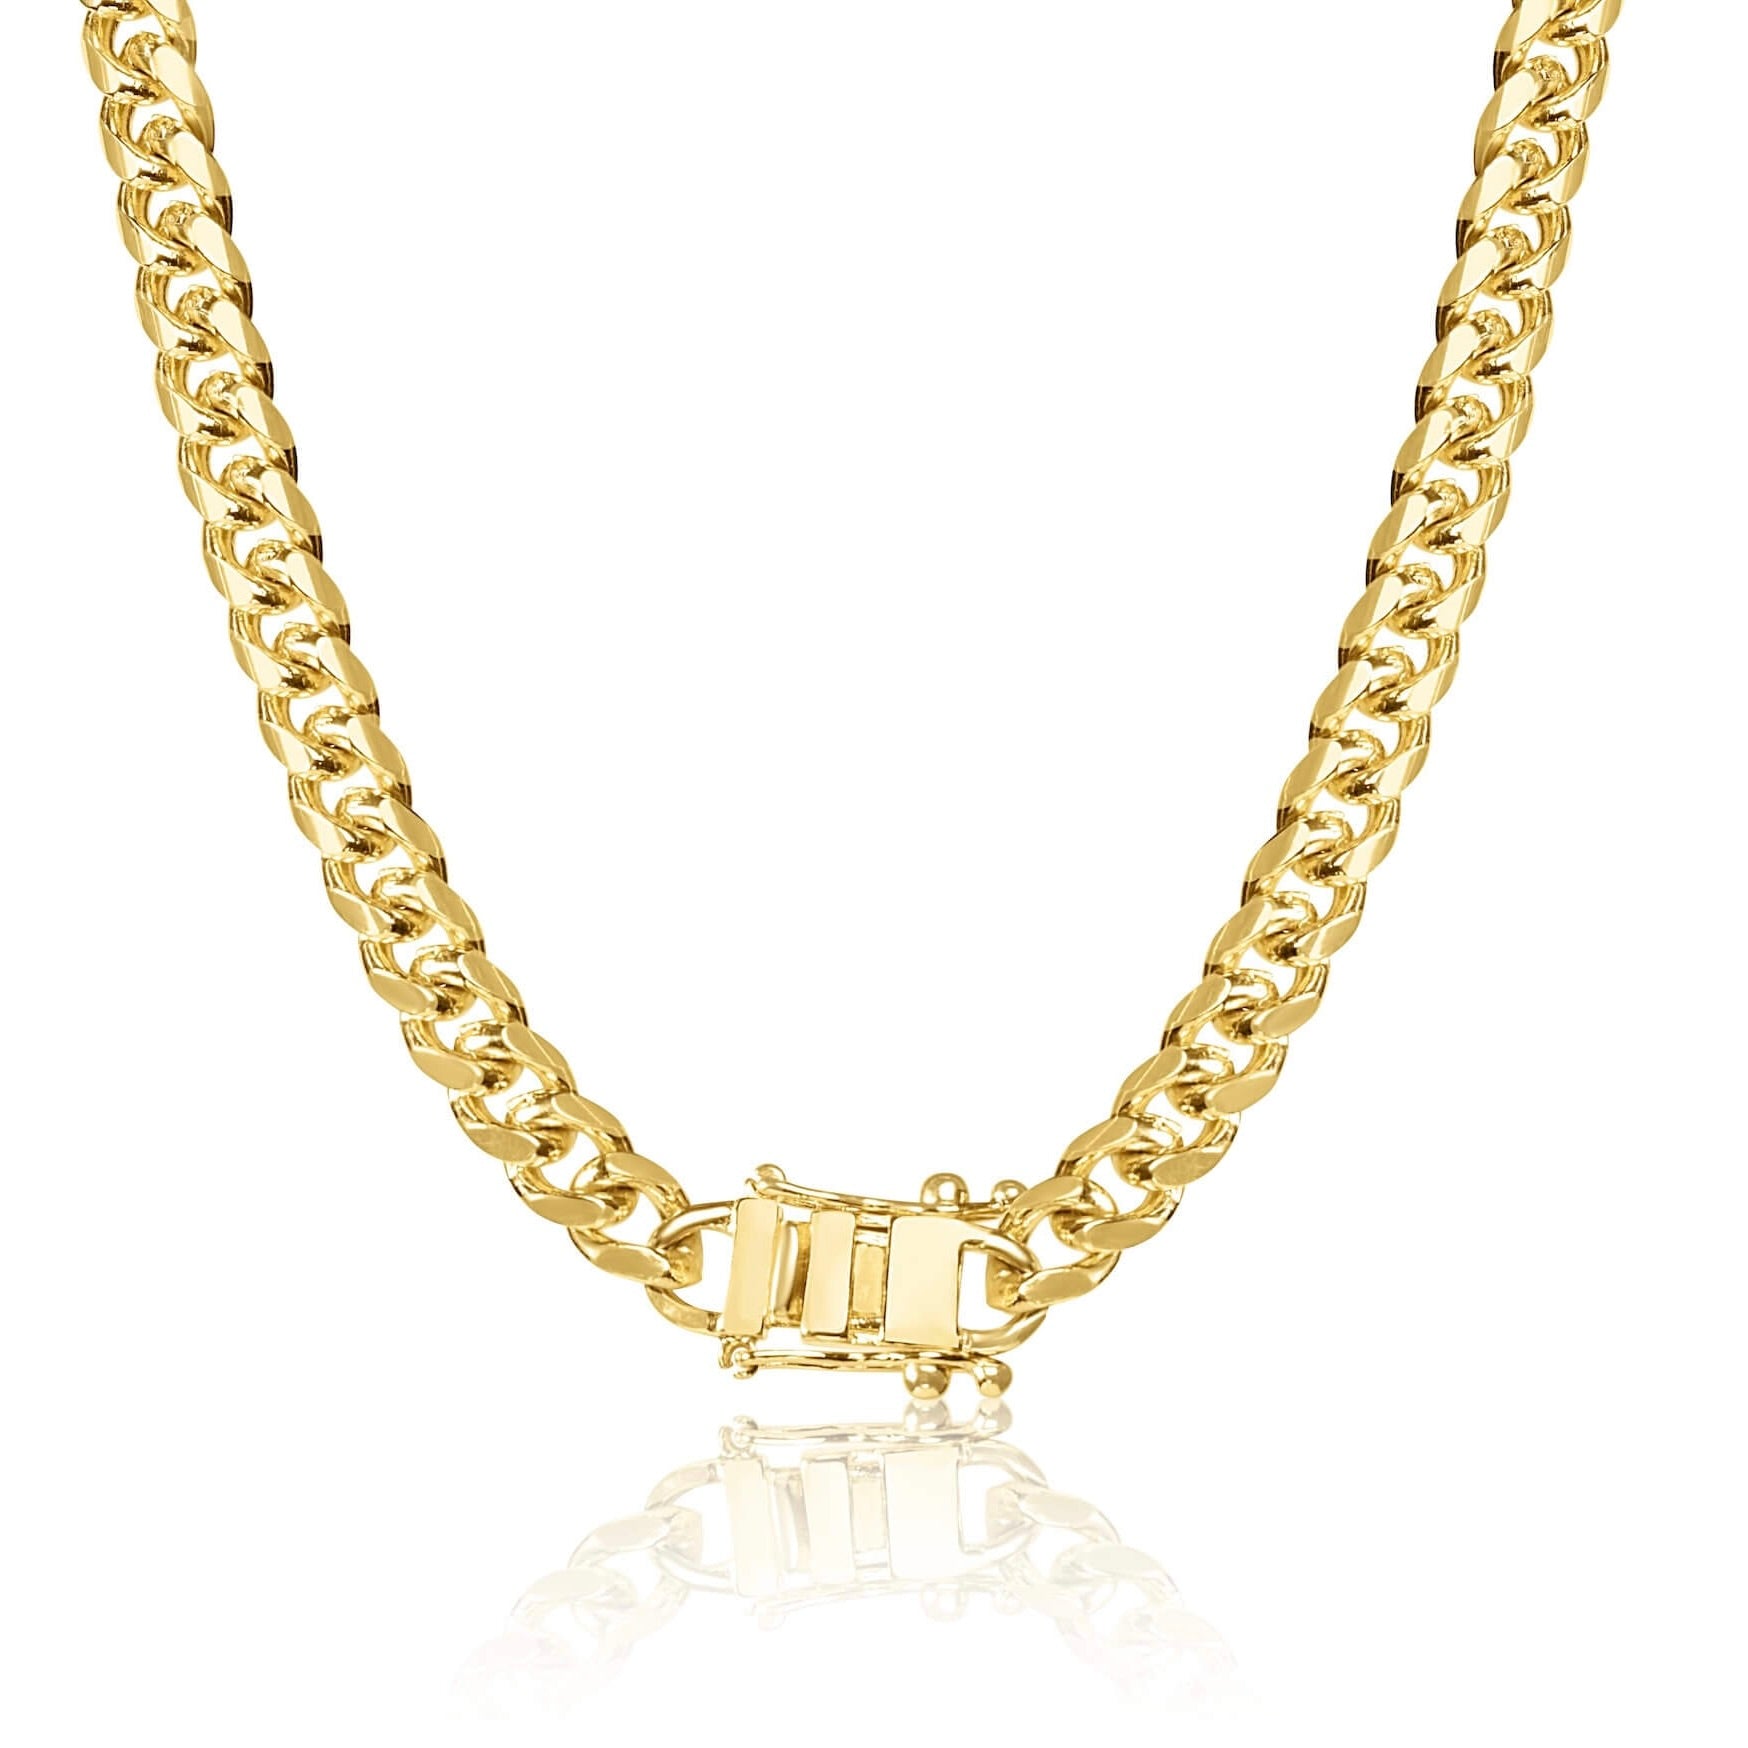 New in! PATARA Miami Chain Necklace เป็นสร้อยคอโซ่ที่มีสีแทรก ความ